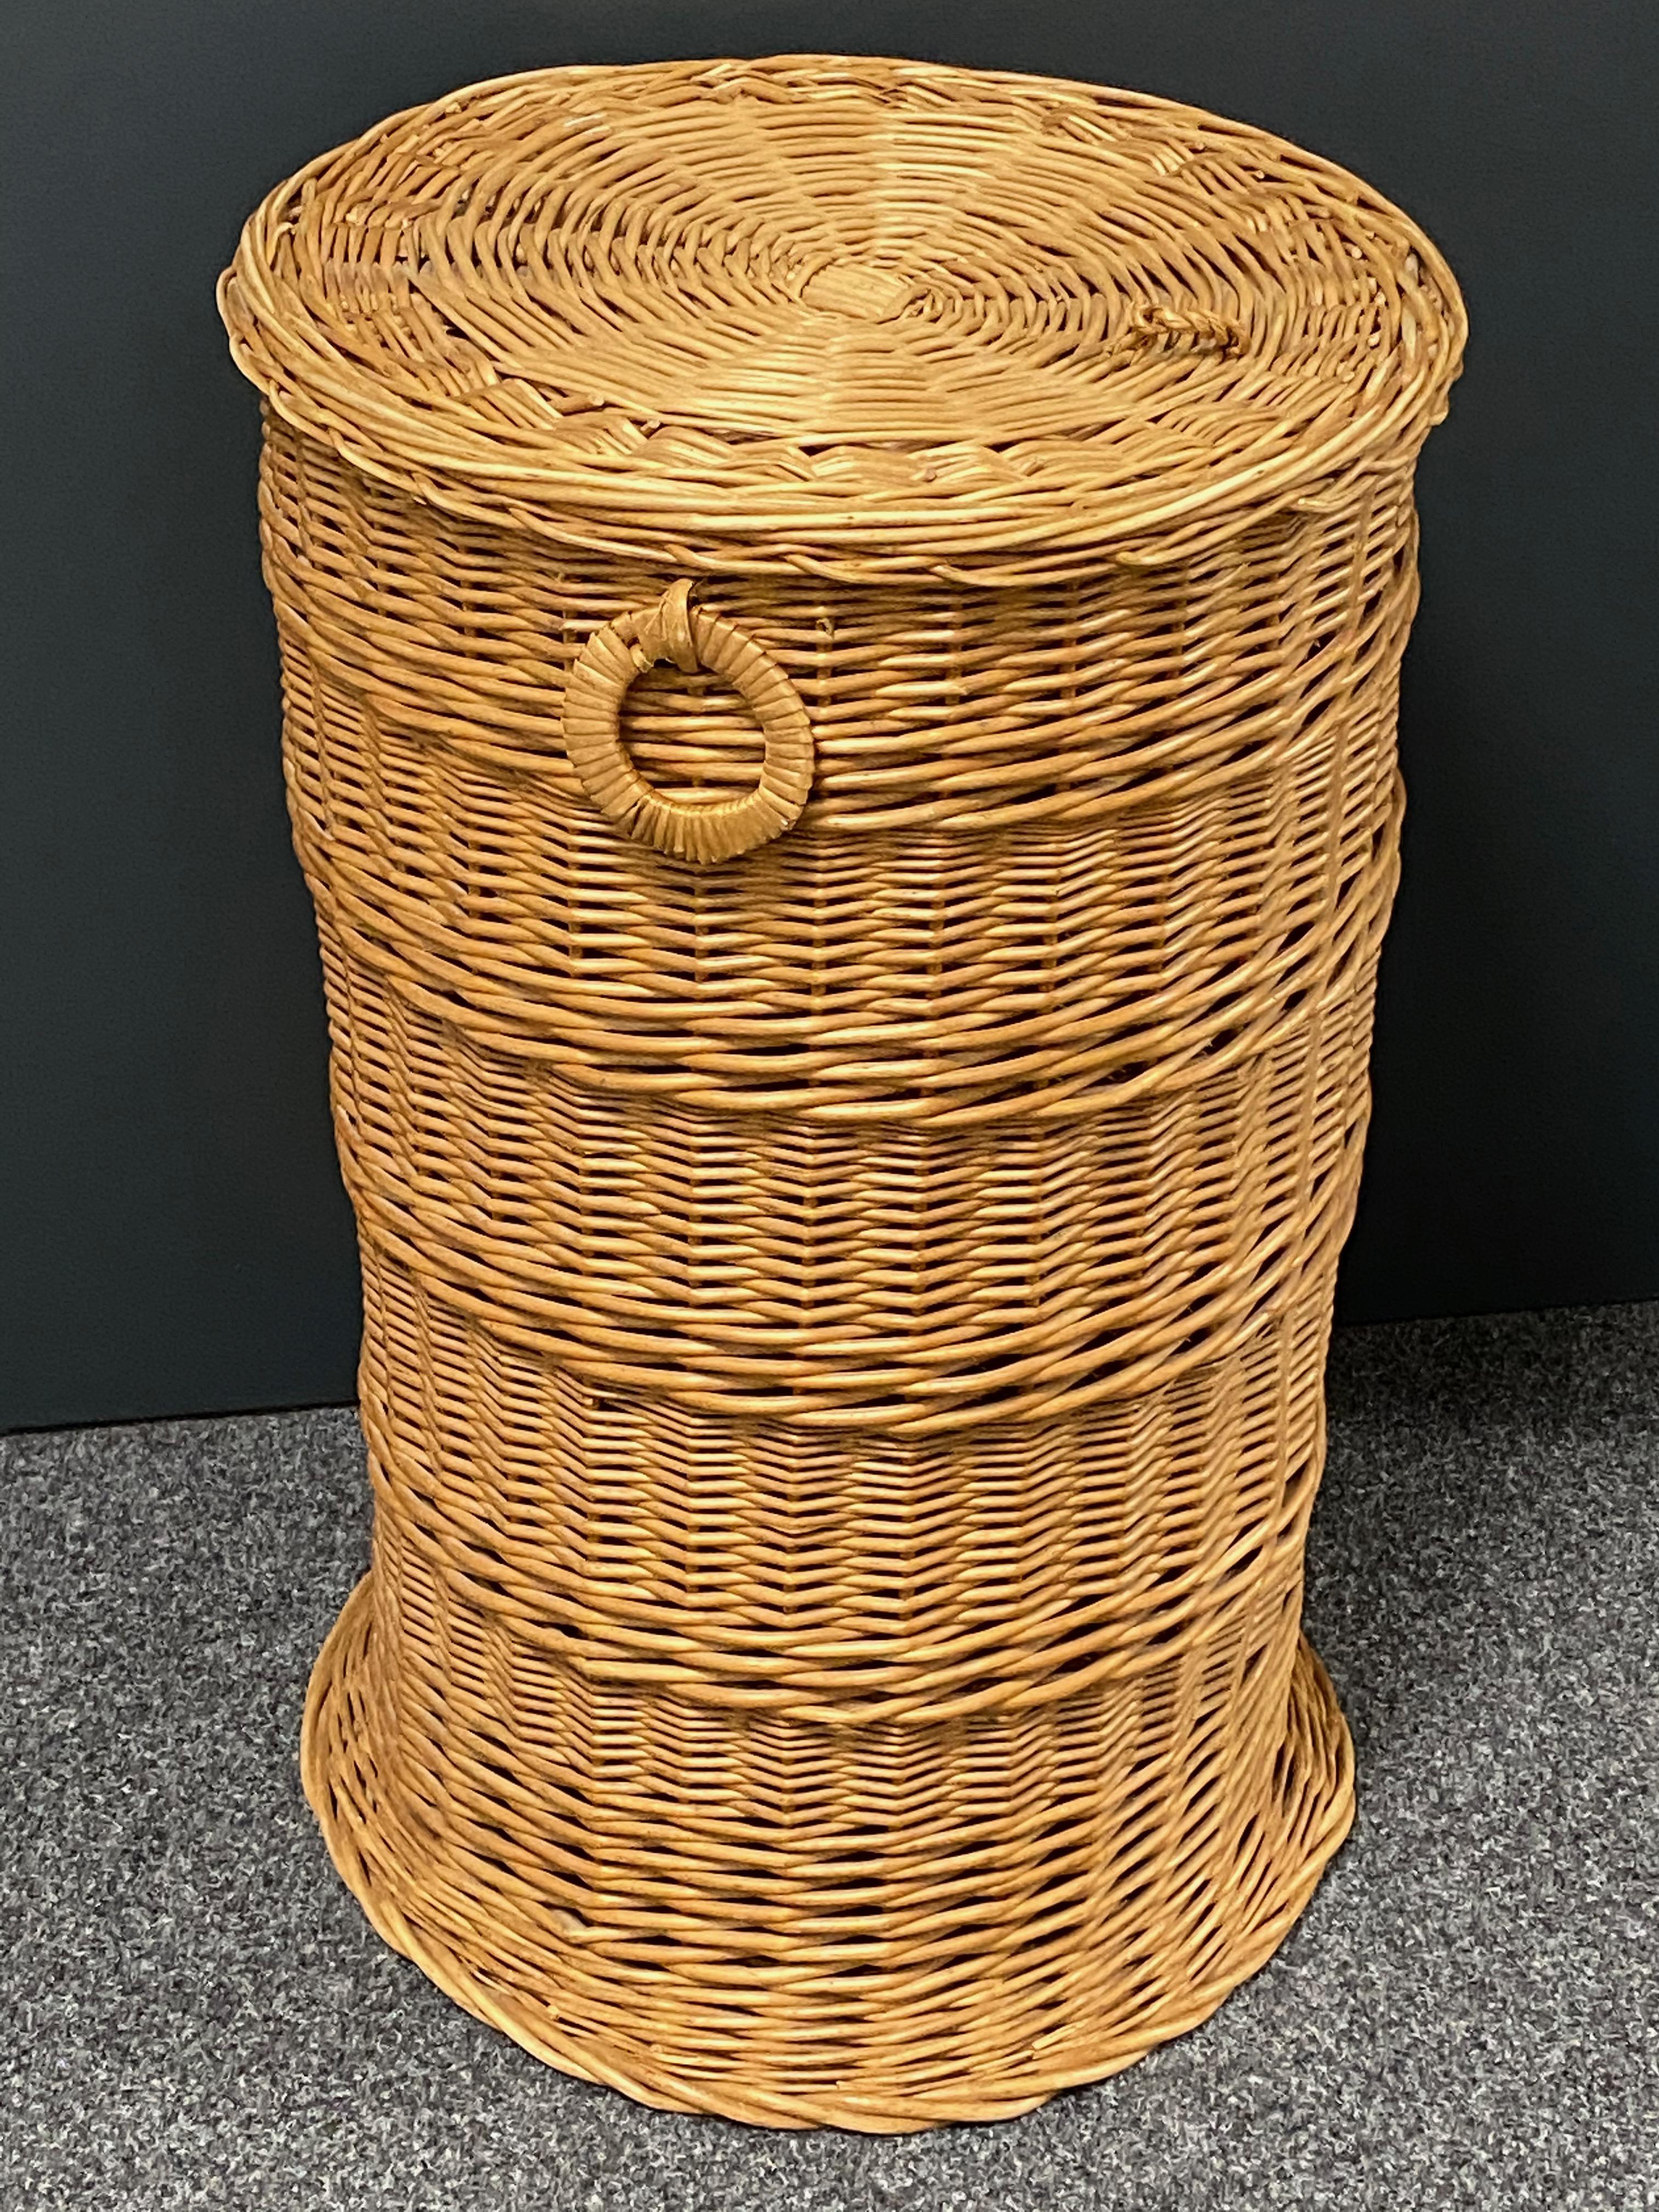 Vintage Midcentury Wicker Laundry Basket Hamper, 1970s, German 1